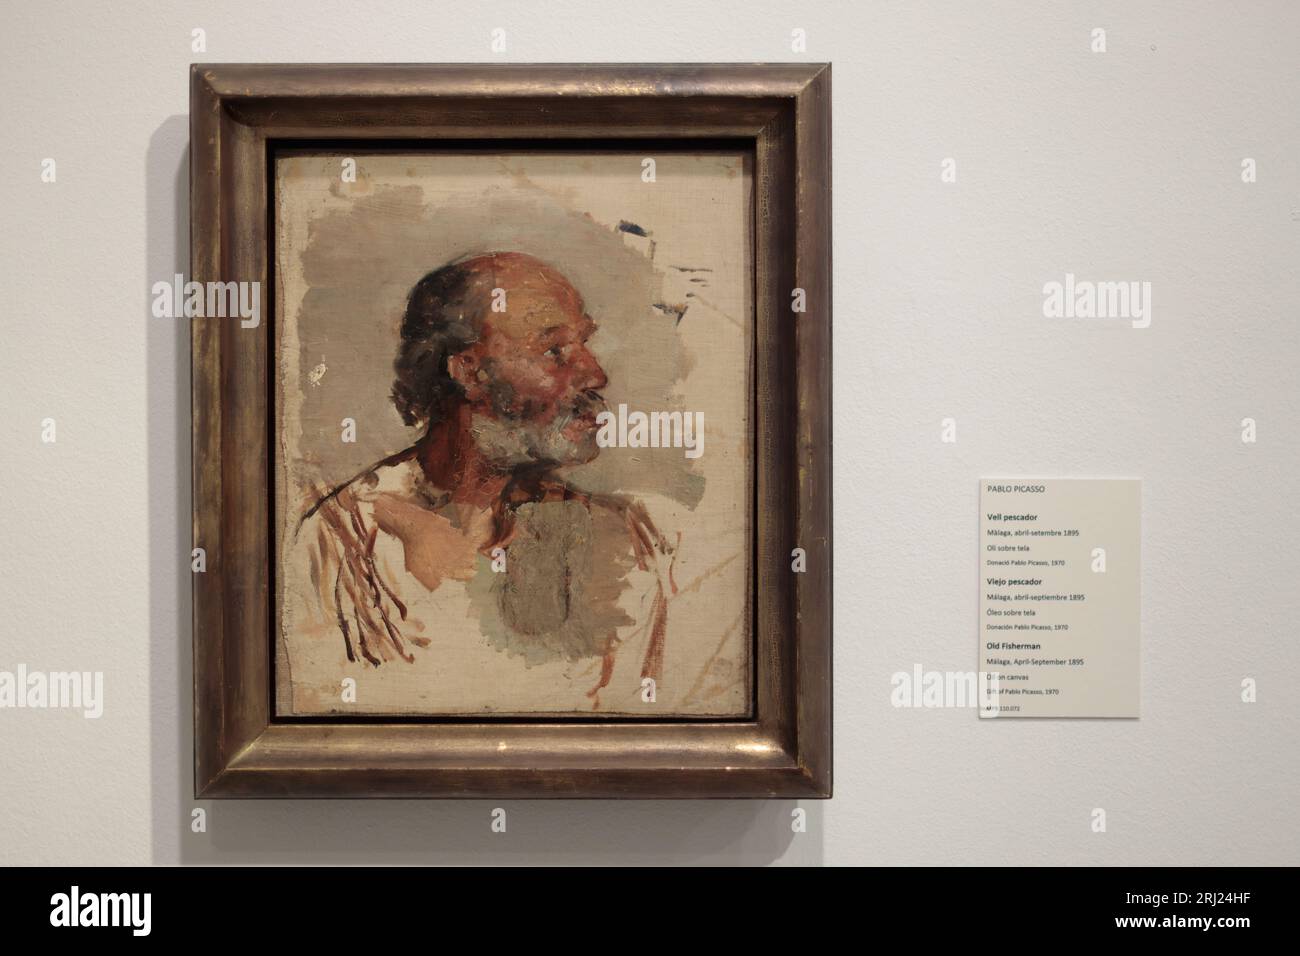 Tableau emblématique « le vieux pêcheur » de Pablo Picasso exposé à Barcelone Banque D'Images